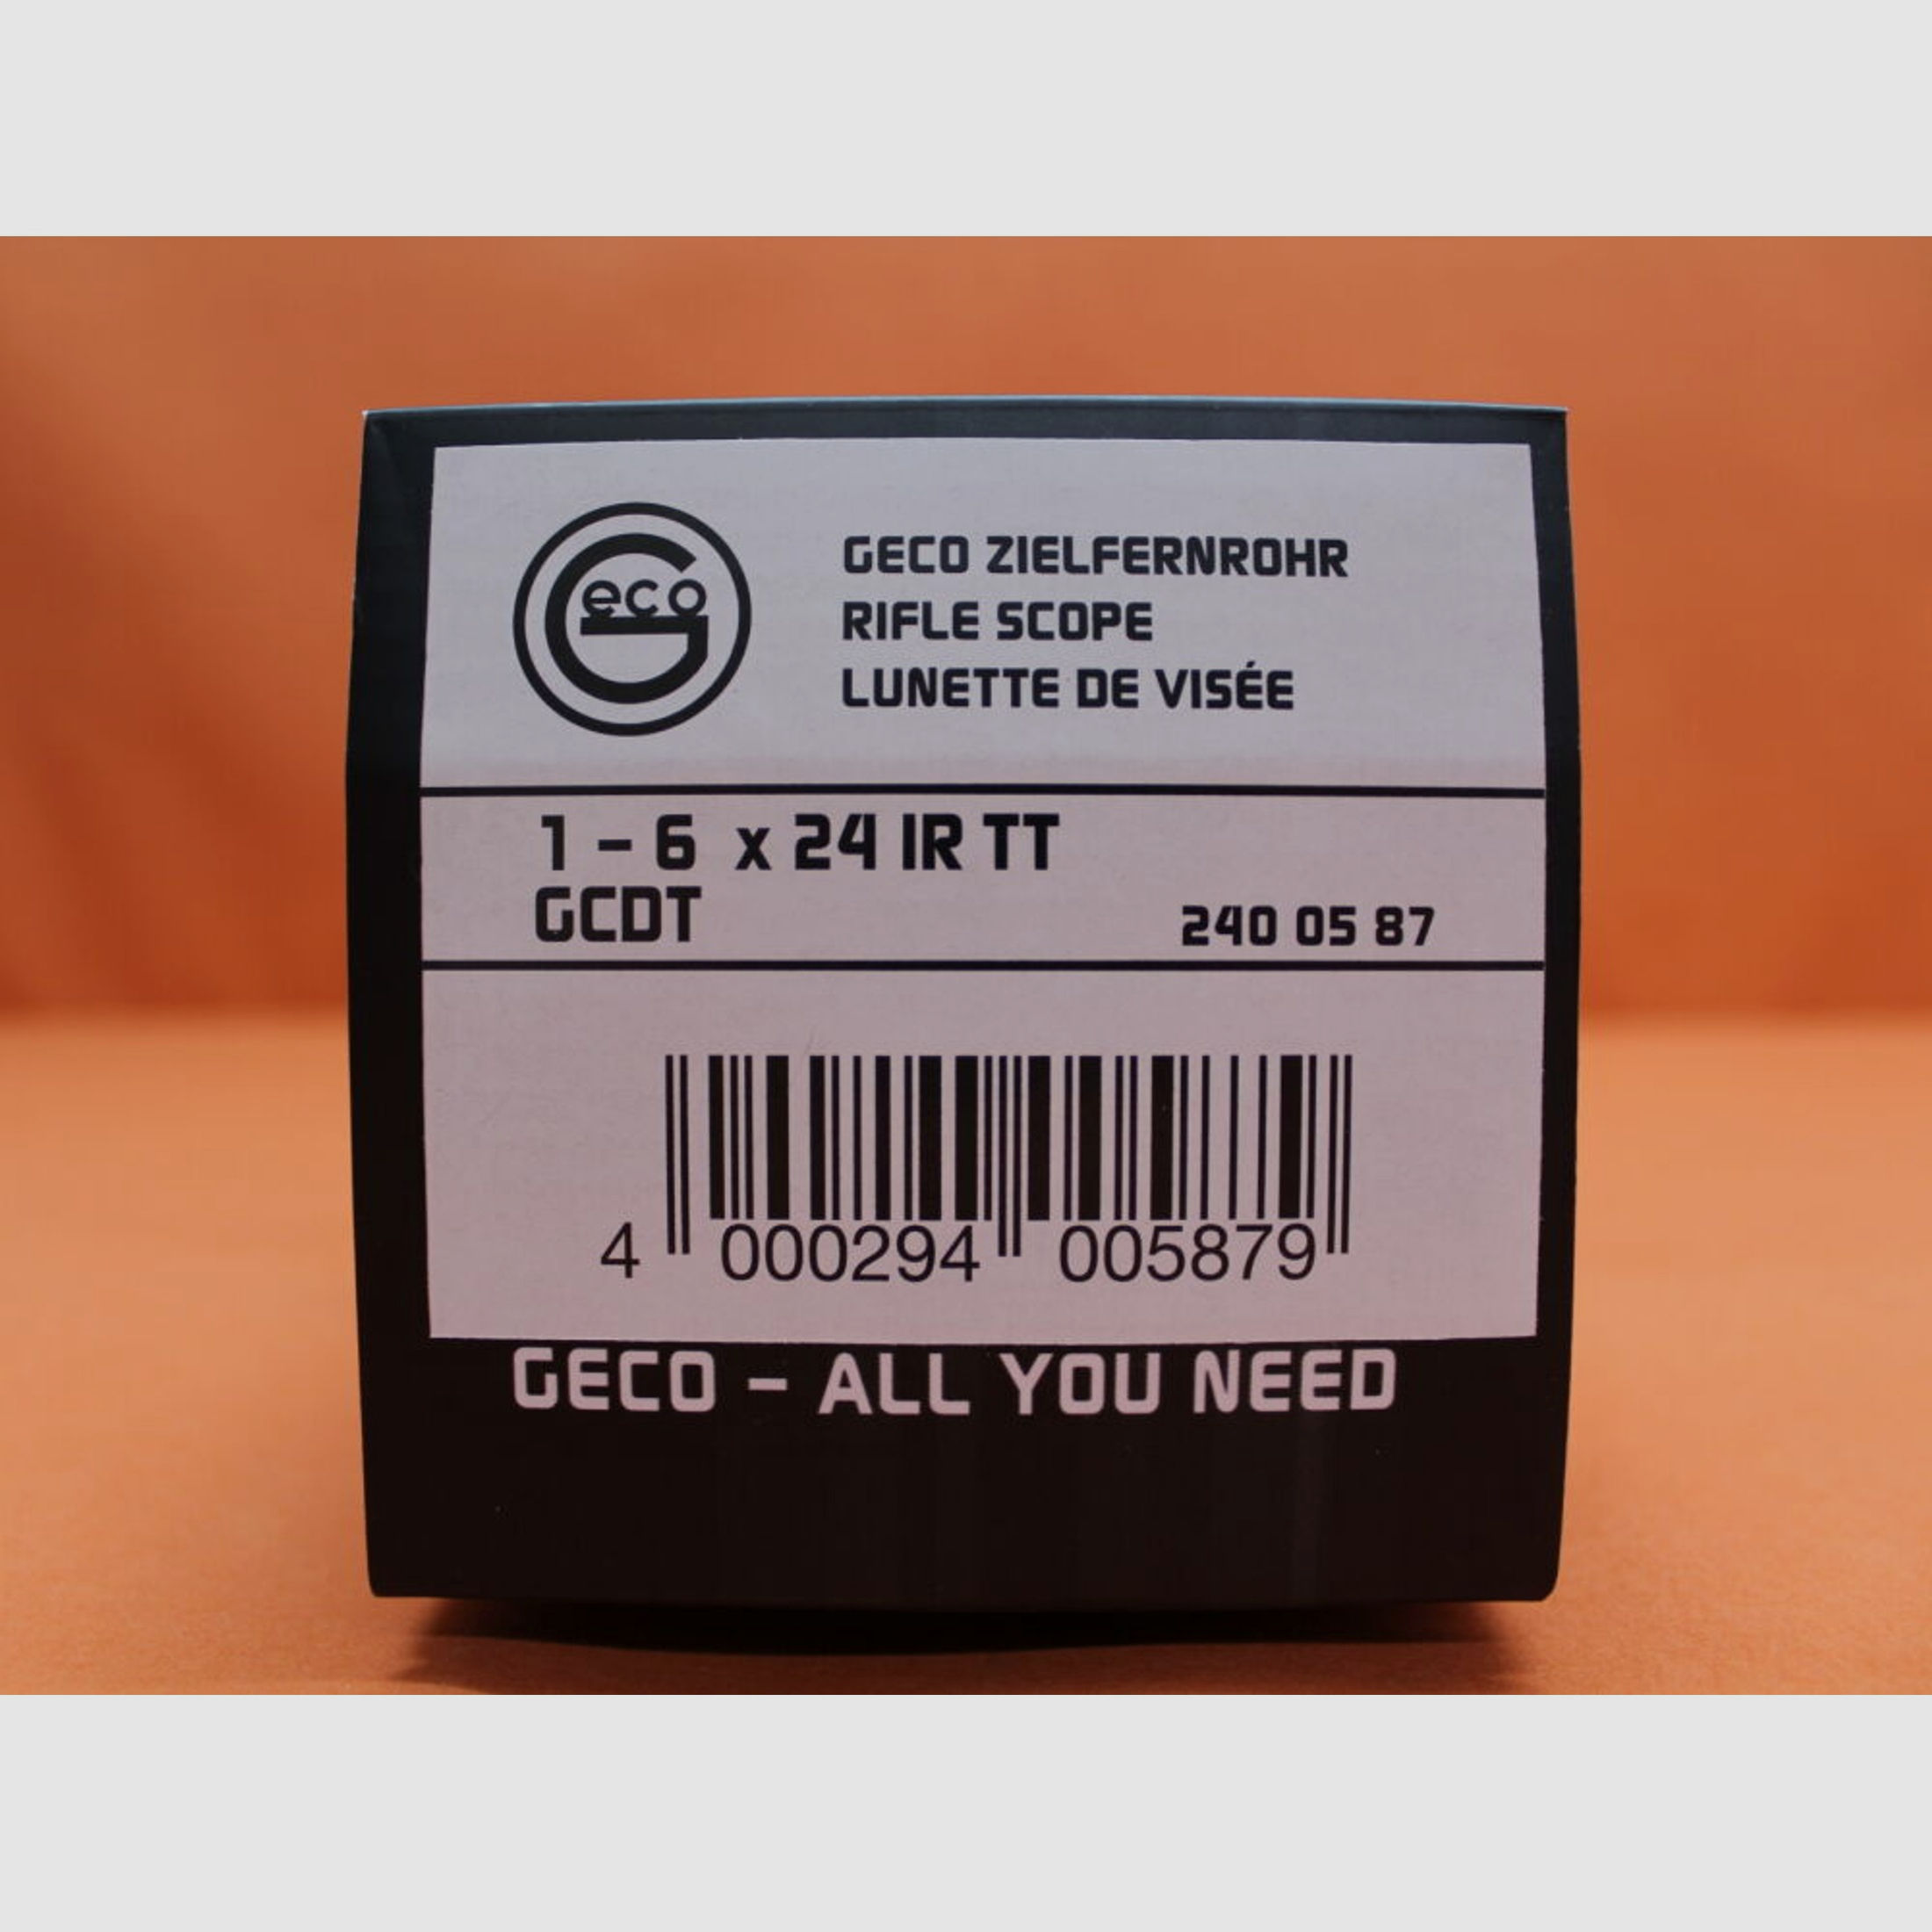 GECO	 Geco Zielfernrohr 1-6x24 IR TT Tactical, GCDT Leuchtabsehen (2.BE) Circle-Dot für IPSC/ Dynamic usw.